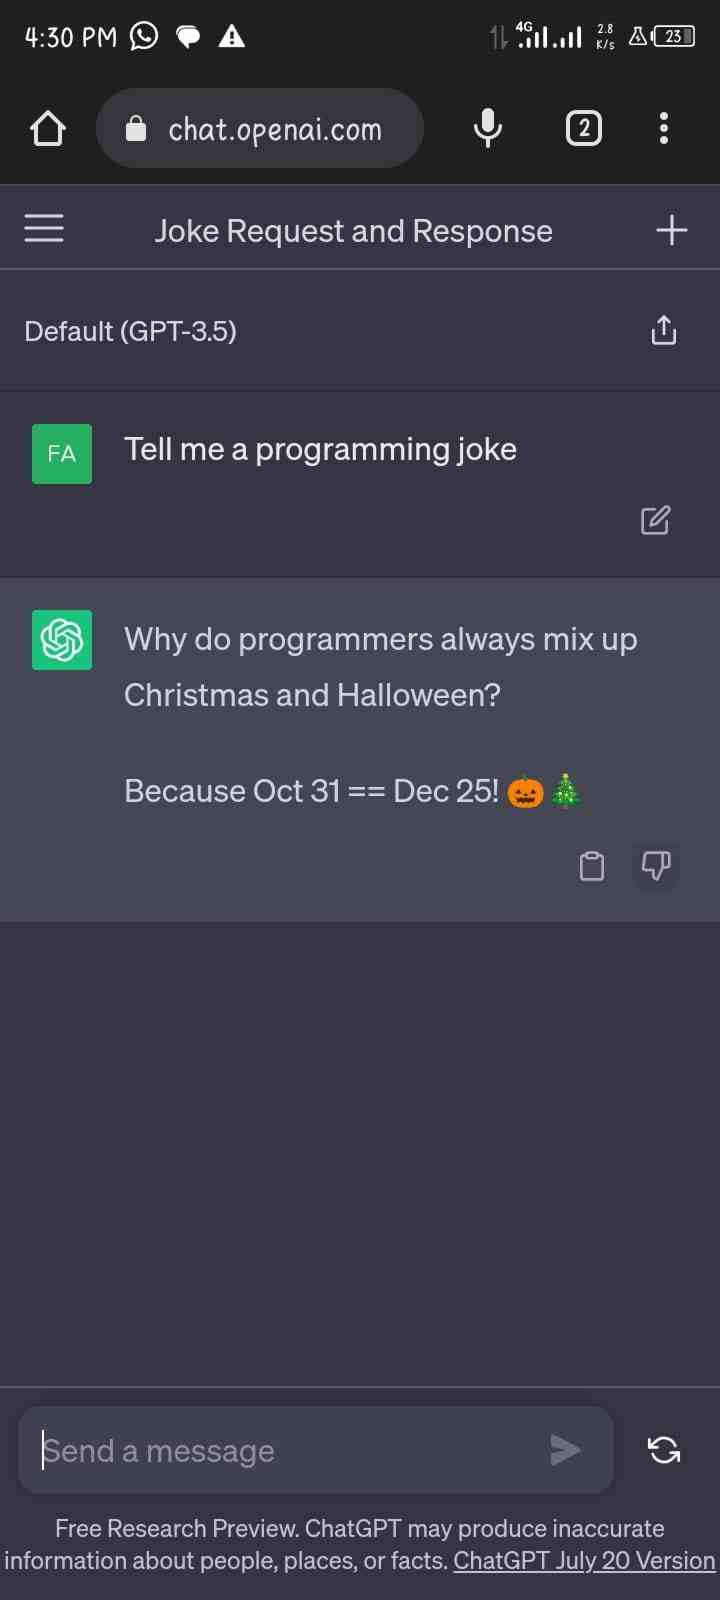 Tell me a Programming Joke